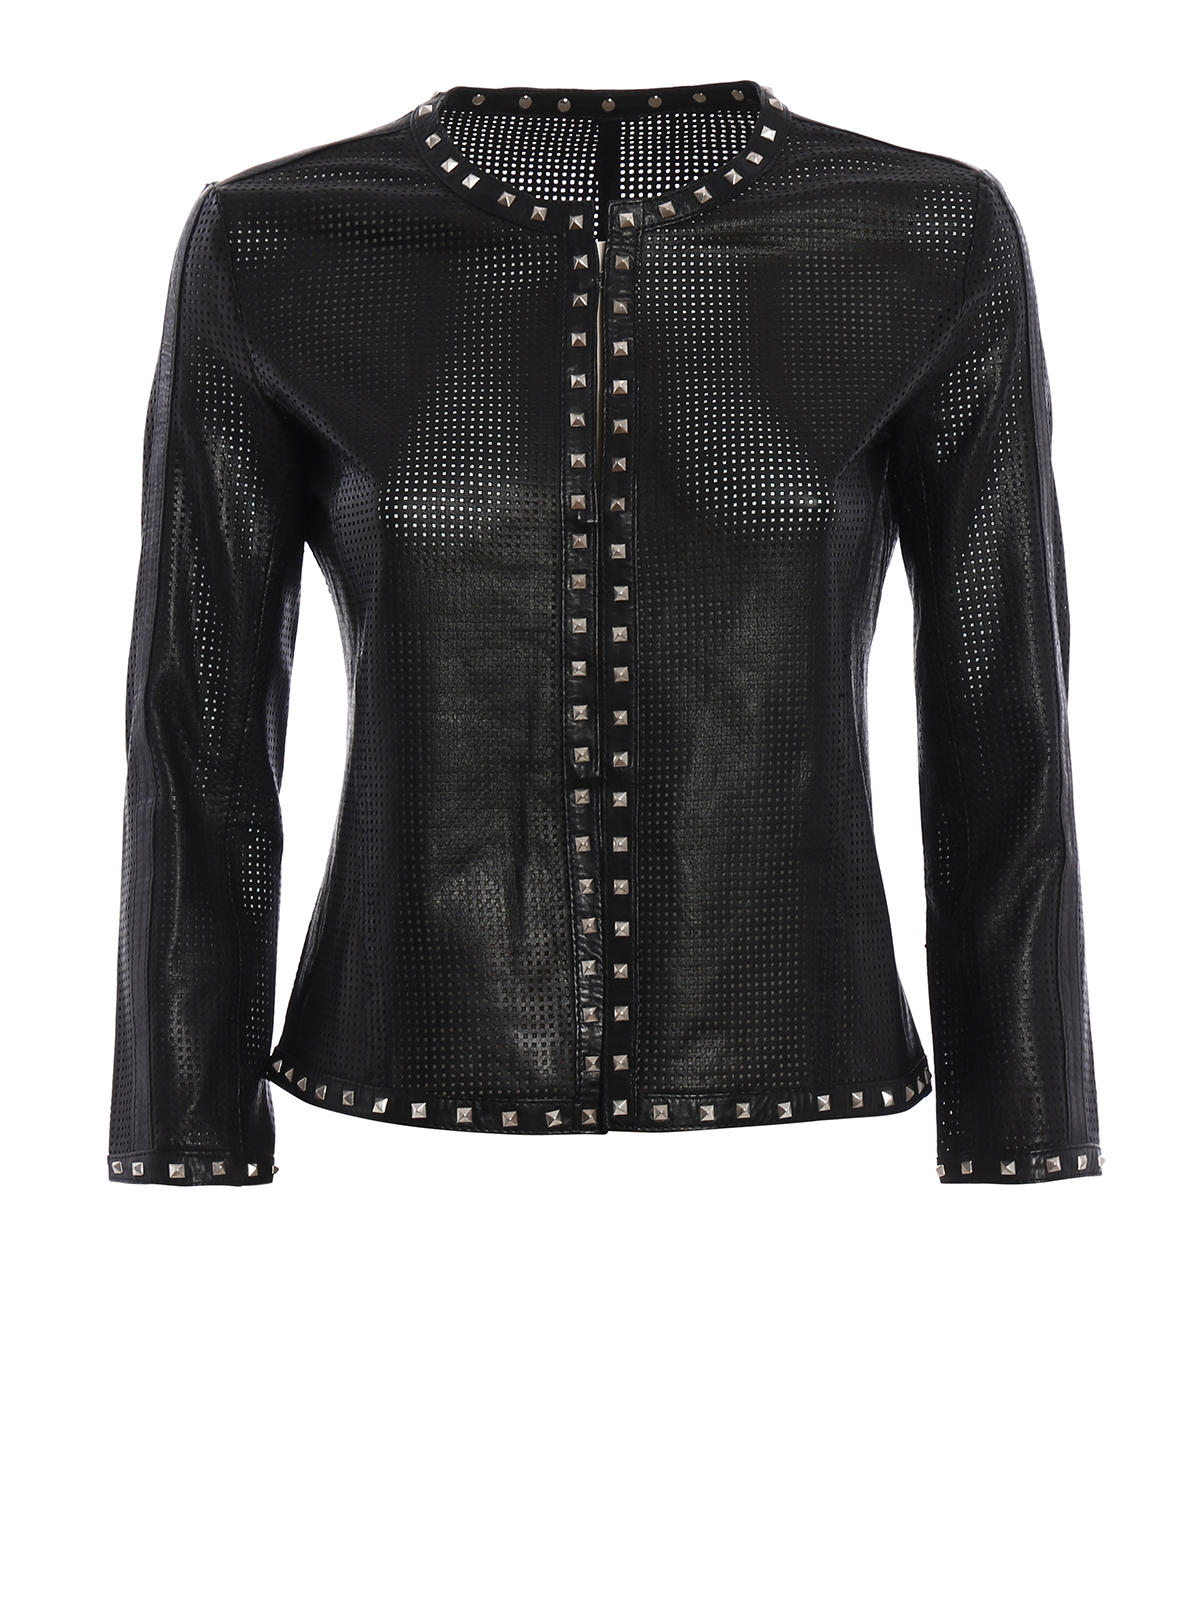 Bully - Studded leather jacket - leather jacket - 914110 | iKRIX.com